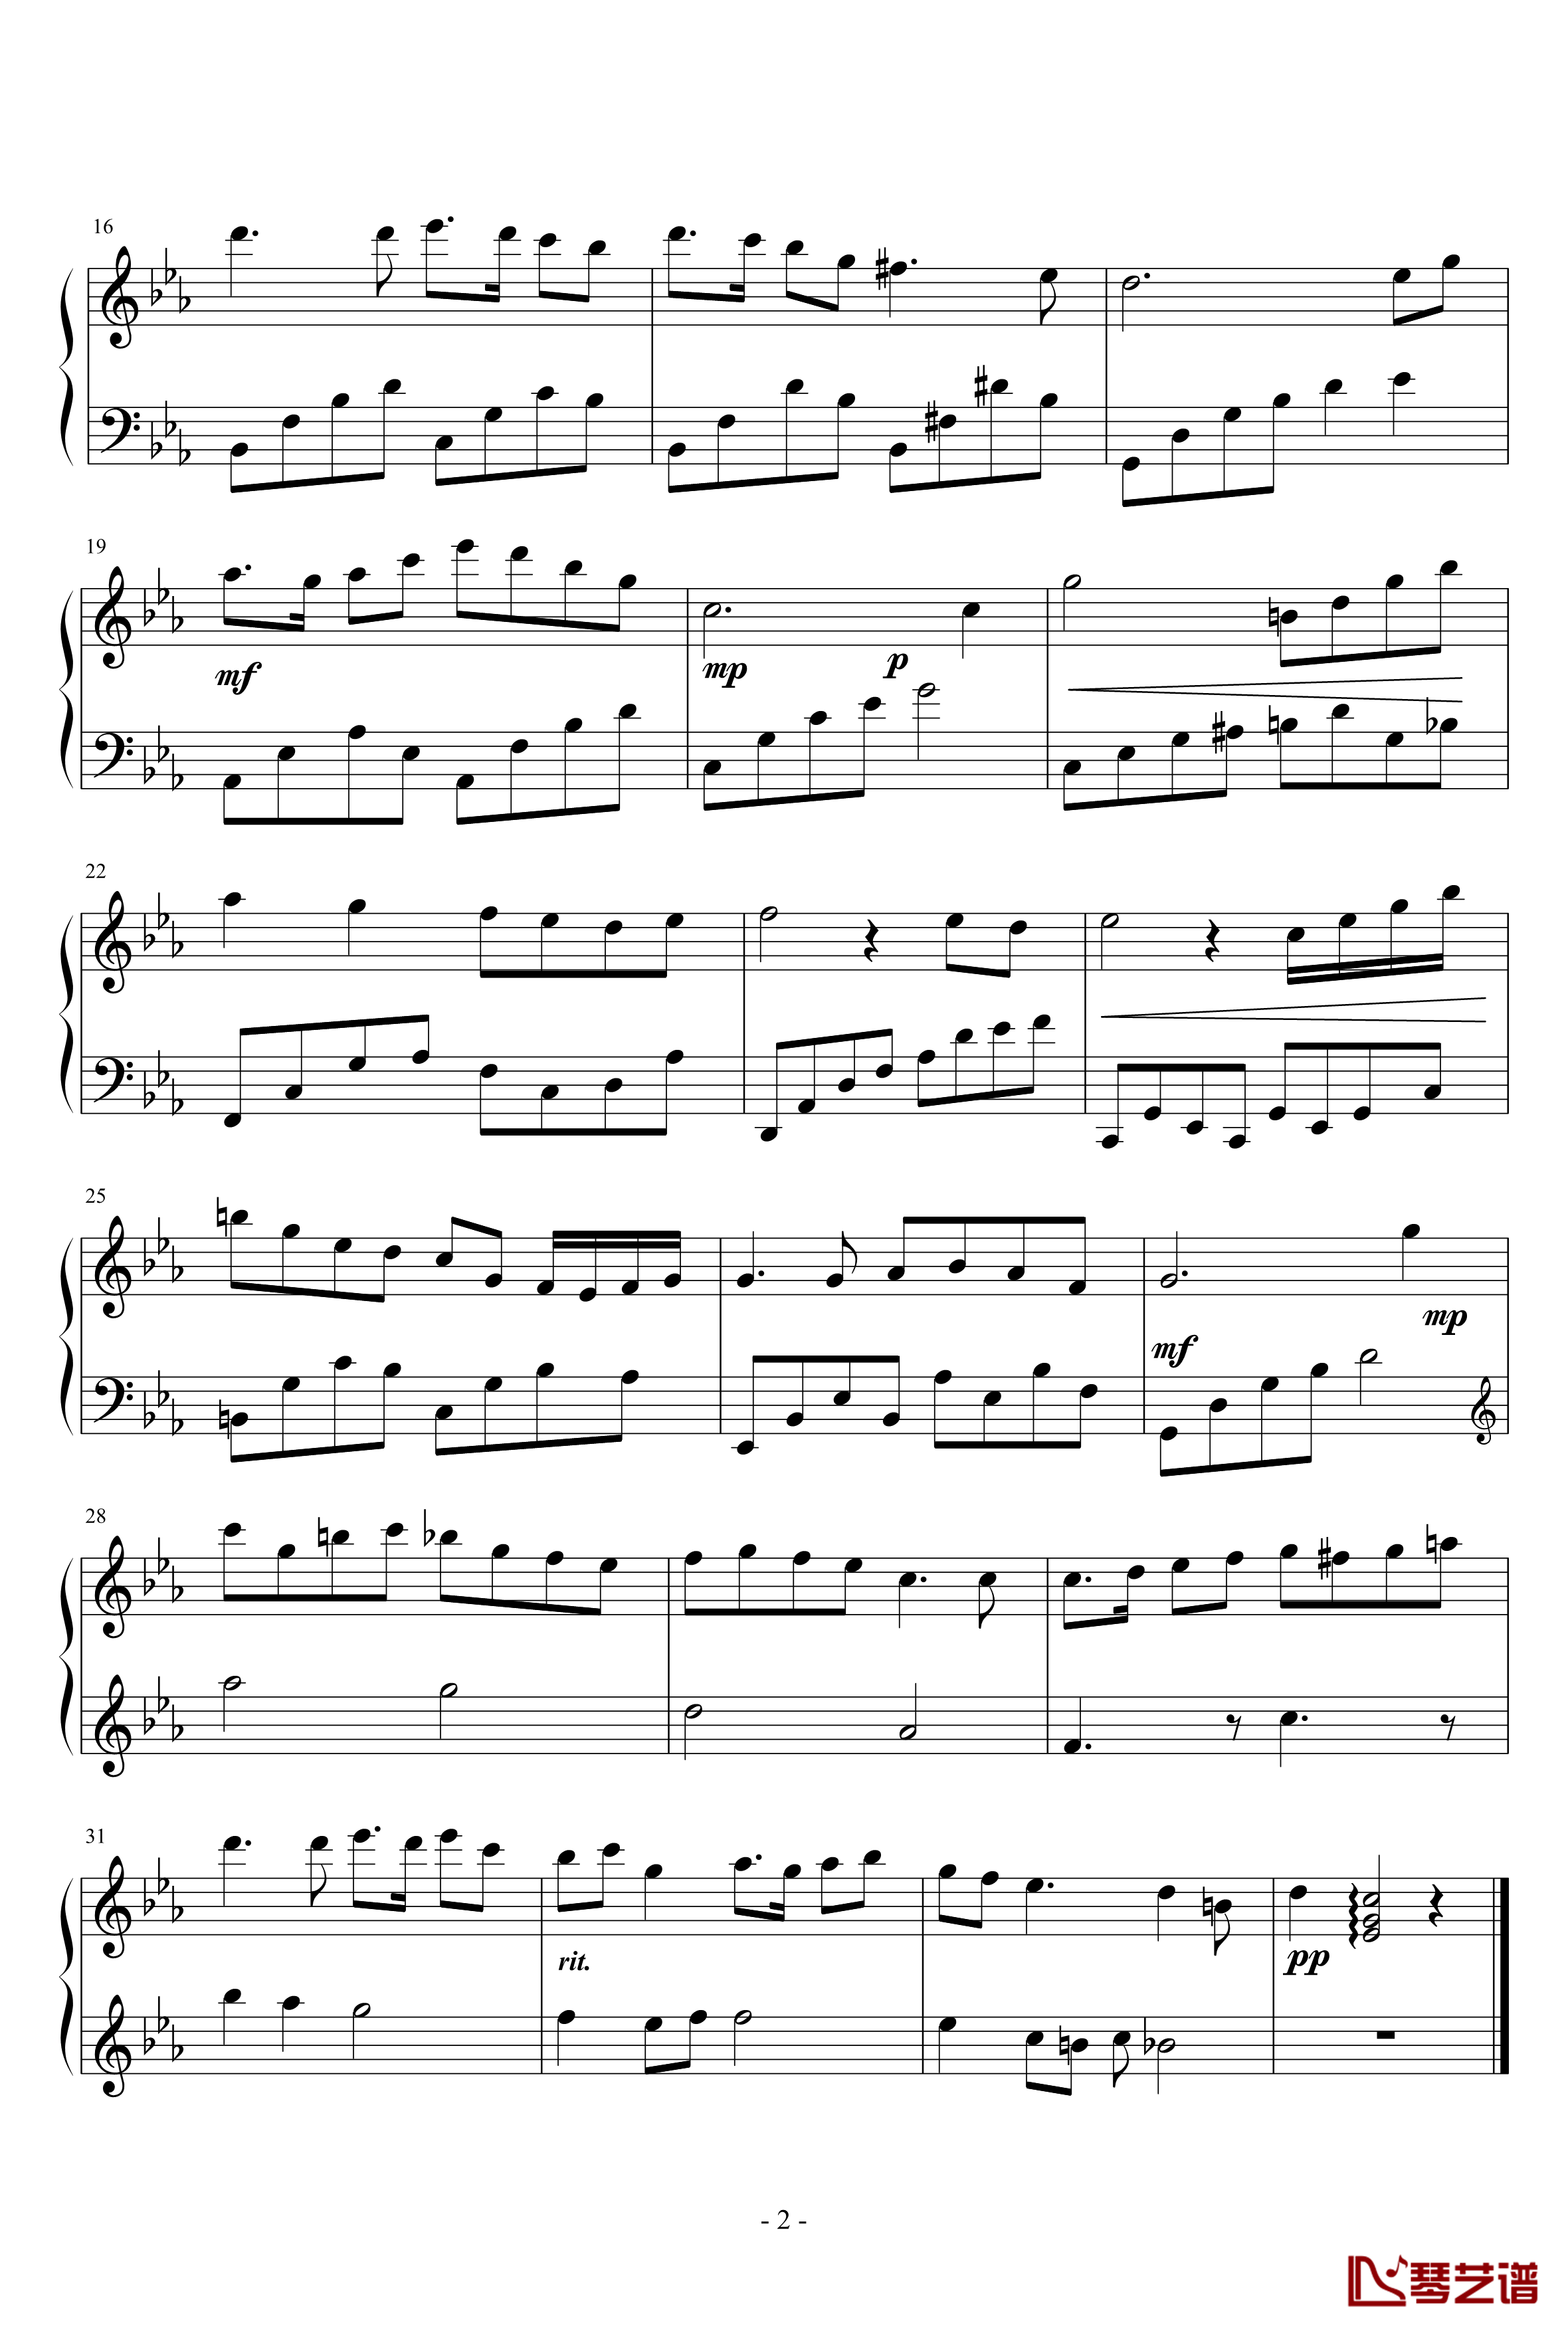 無想曲钢琴谱-狂音2